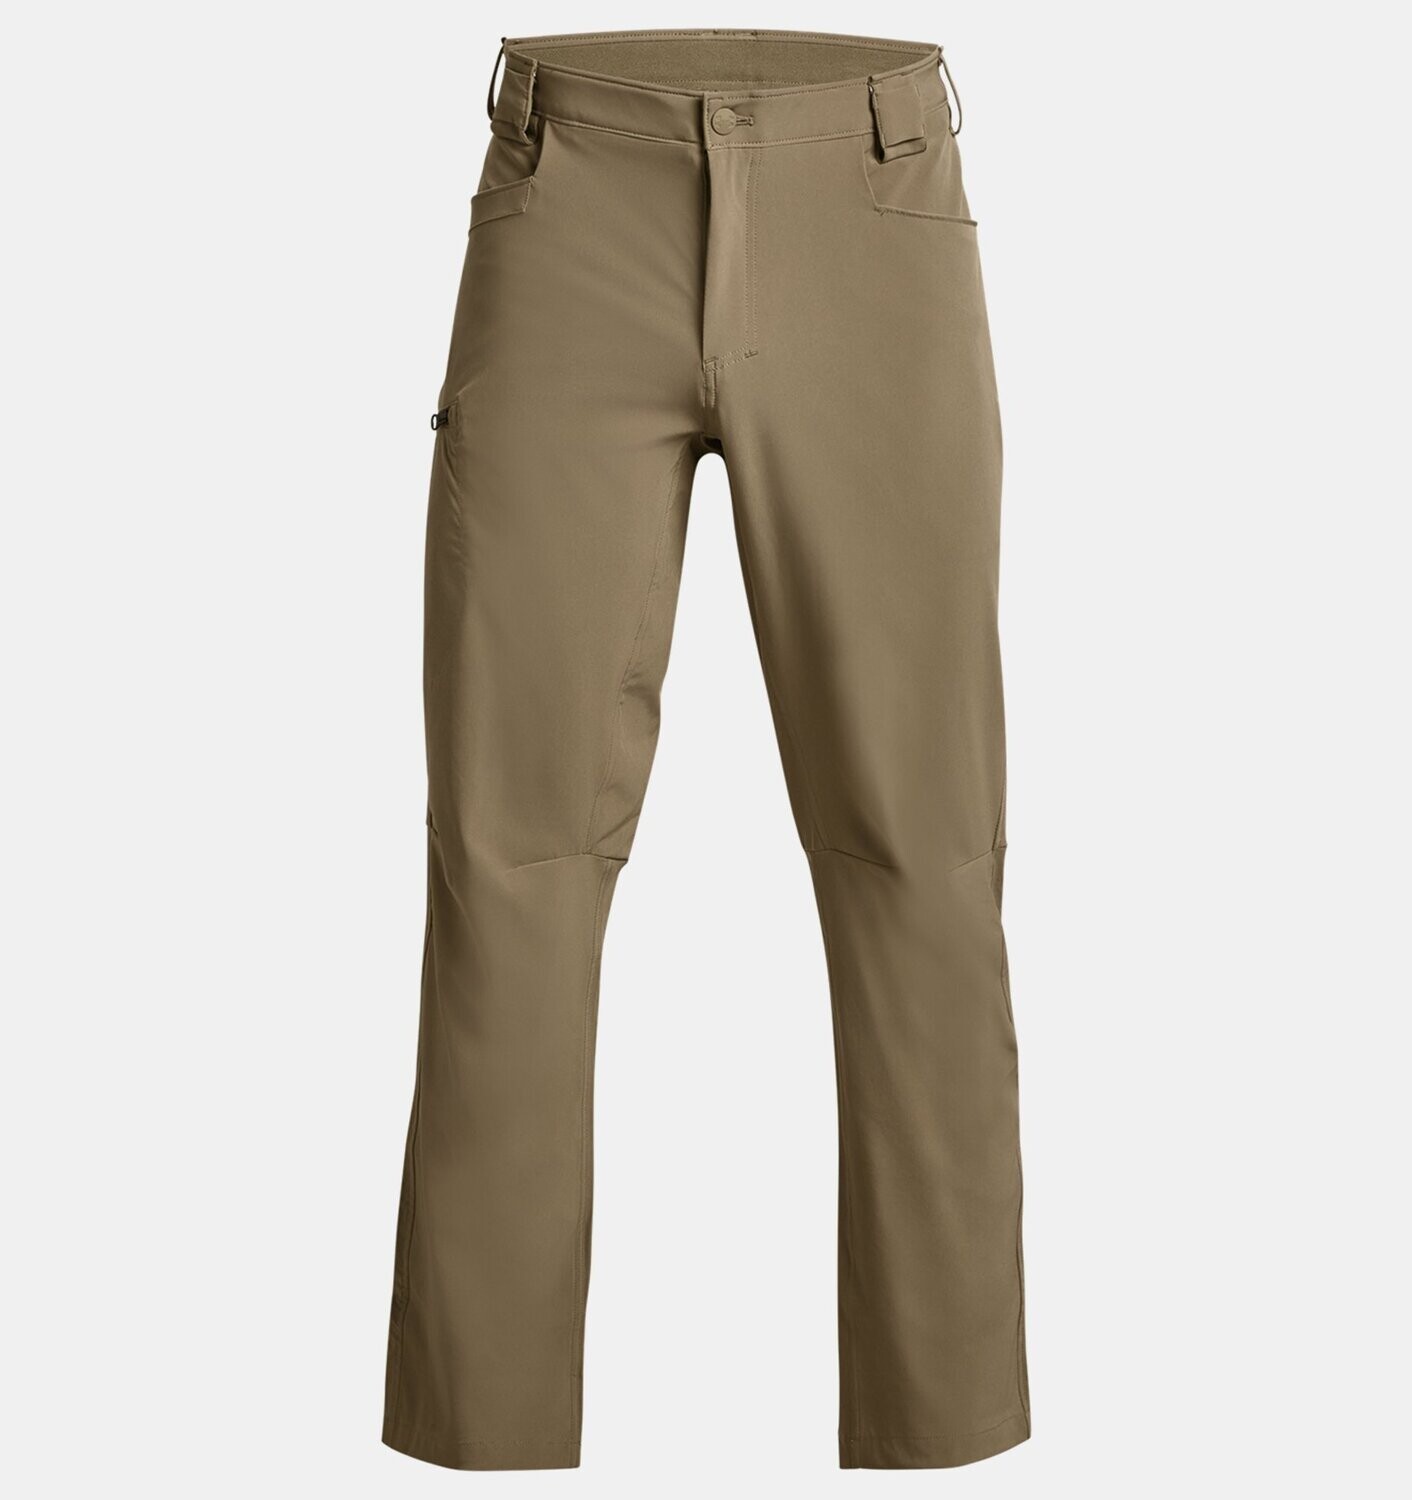 Under Armour Men's Defender Pants, Color: Brown, Size: 36/32